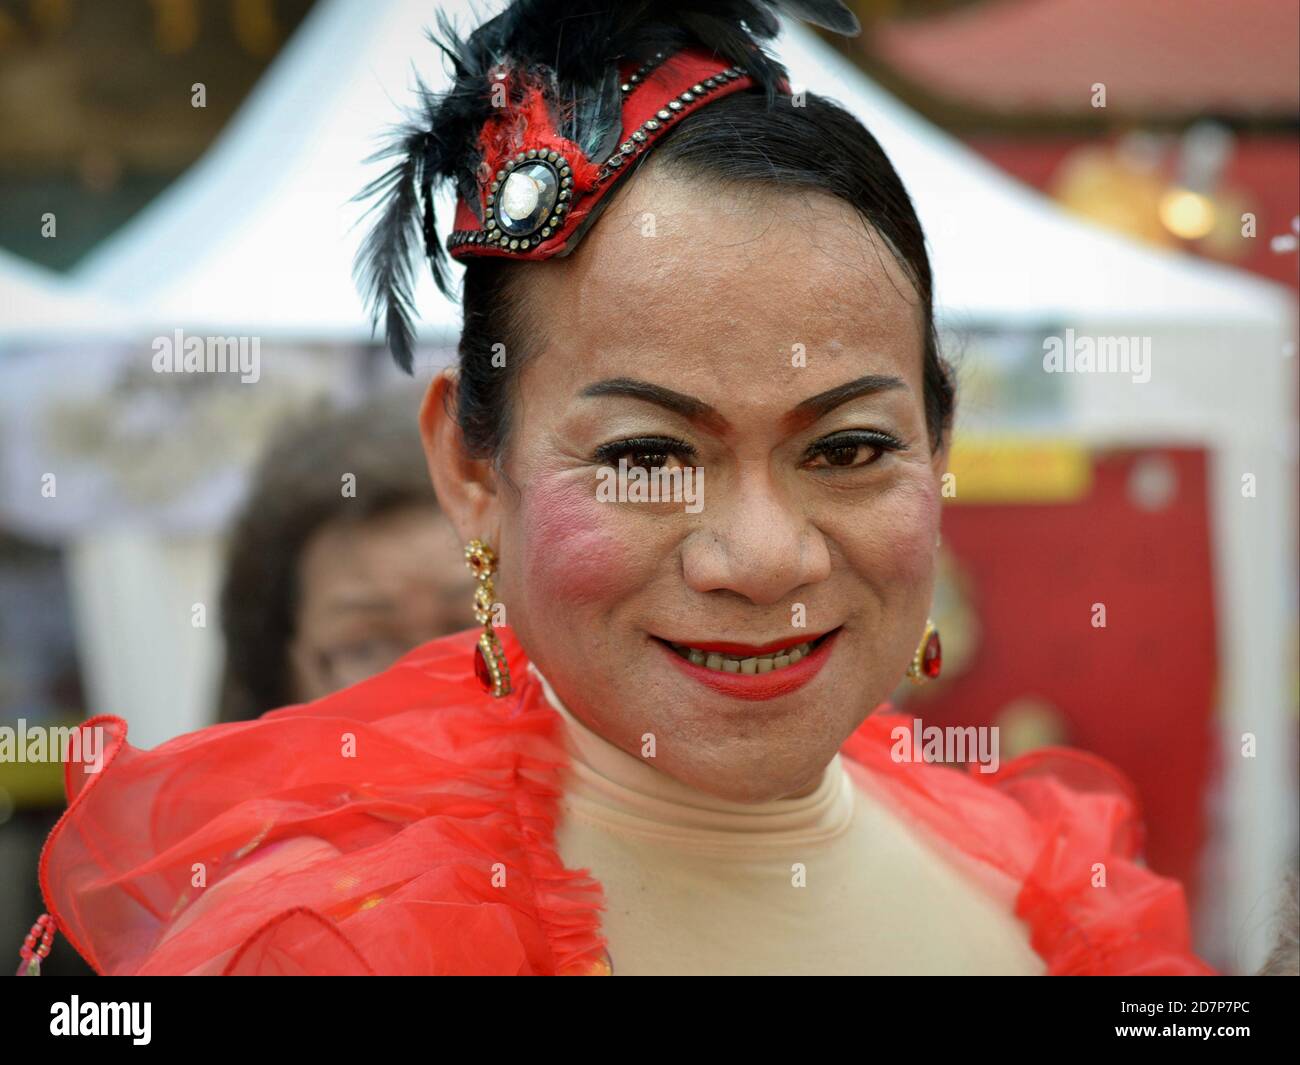 Medio invecchiato vestito thailandese cross-dressing genere queer (kathoey) sorride per la macchina fotografica a Chinatown durante il Capodanno cinese. Foto Stock